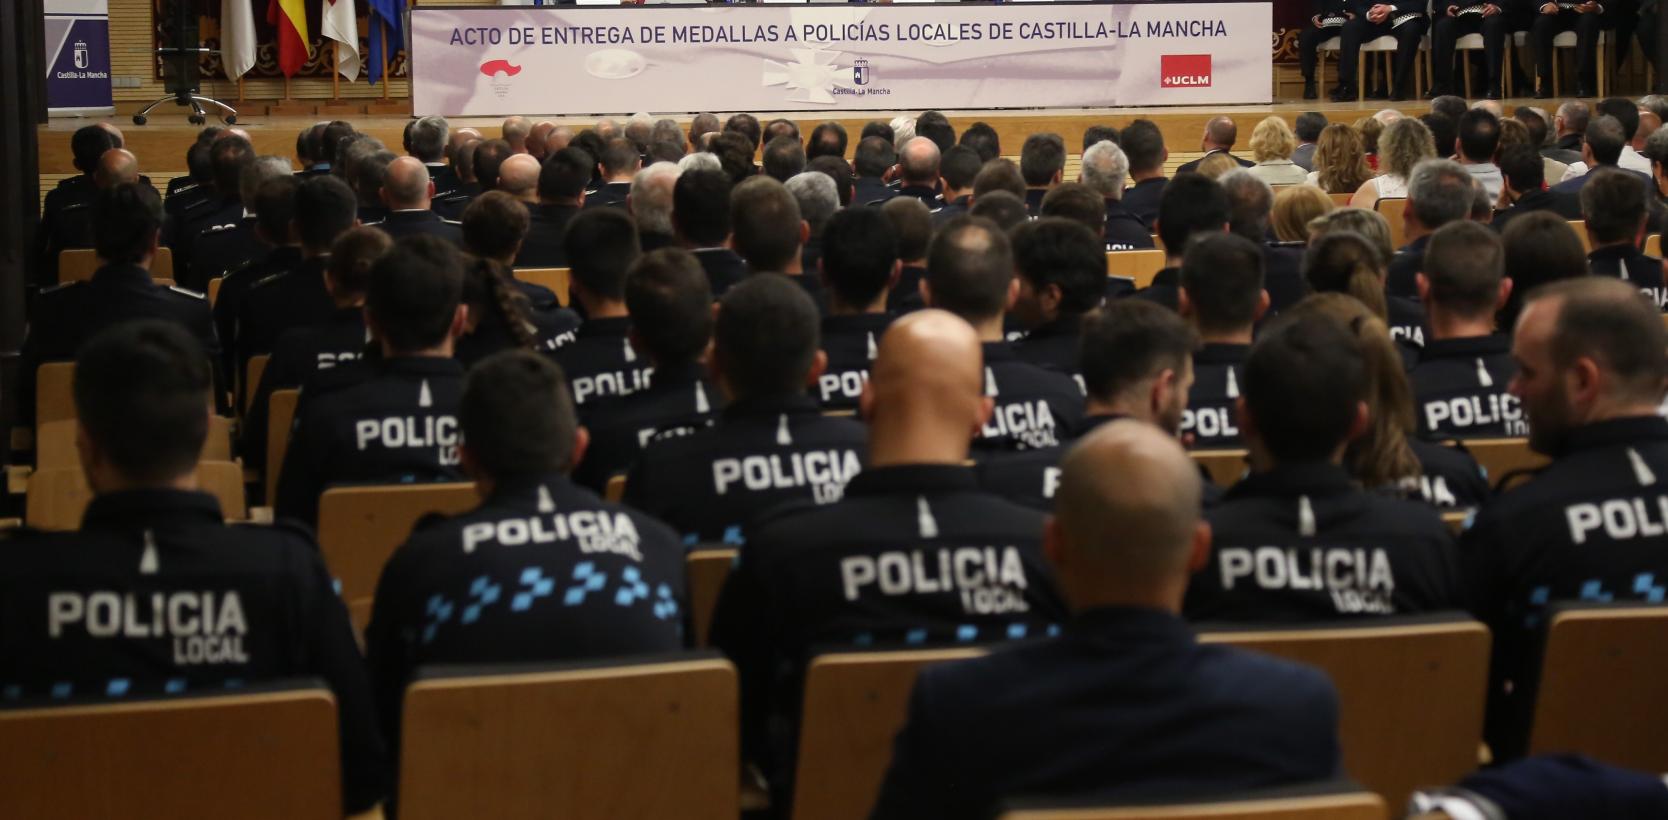 SPL CLM ALBACETE solicita al Equipo de Gobierno que DEJEN TRABAJAR EN PAZ a  la plantilla de la Policía Local | SPL-CLM